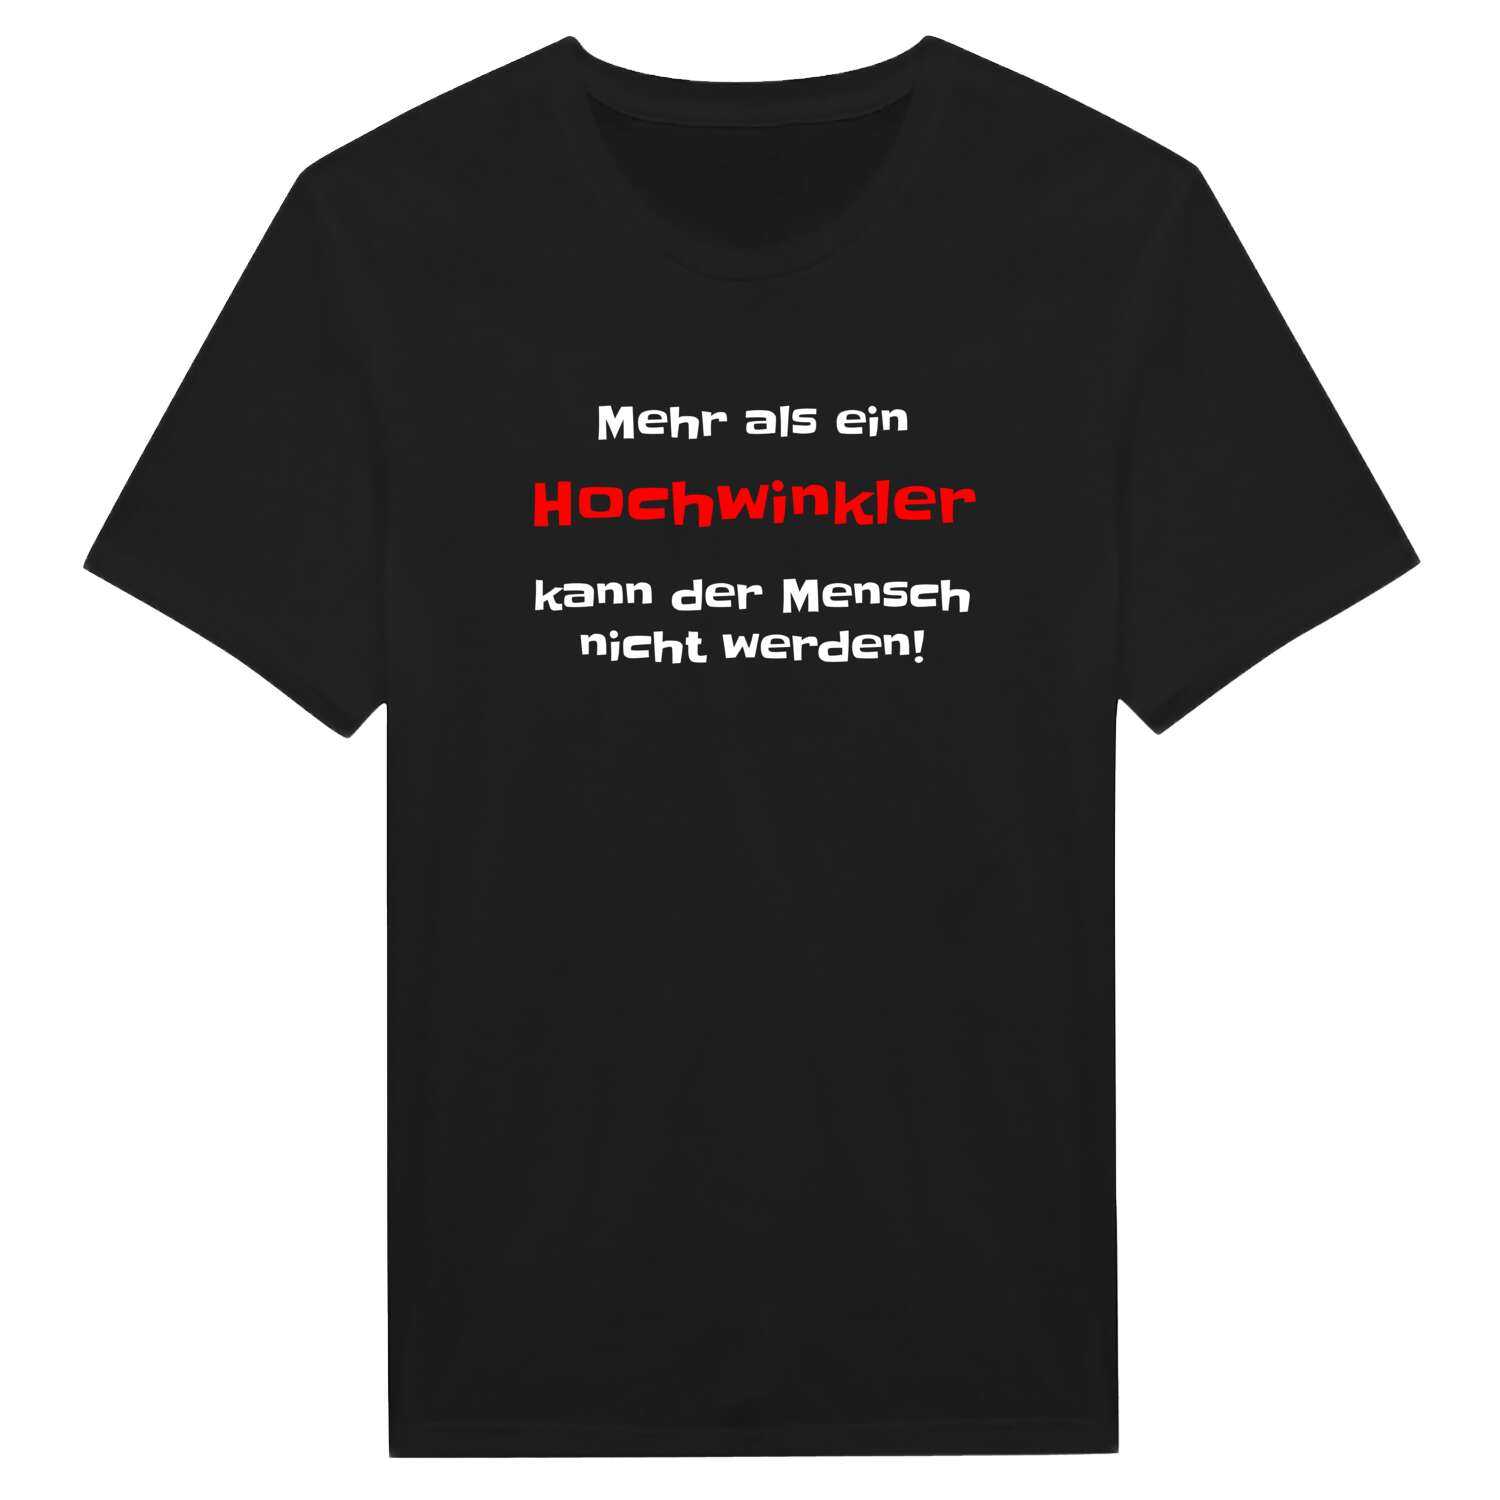 Hochwinkl T-Shirt »Mehr als ein«